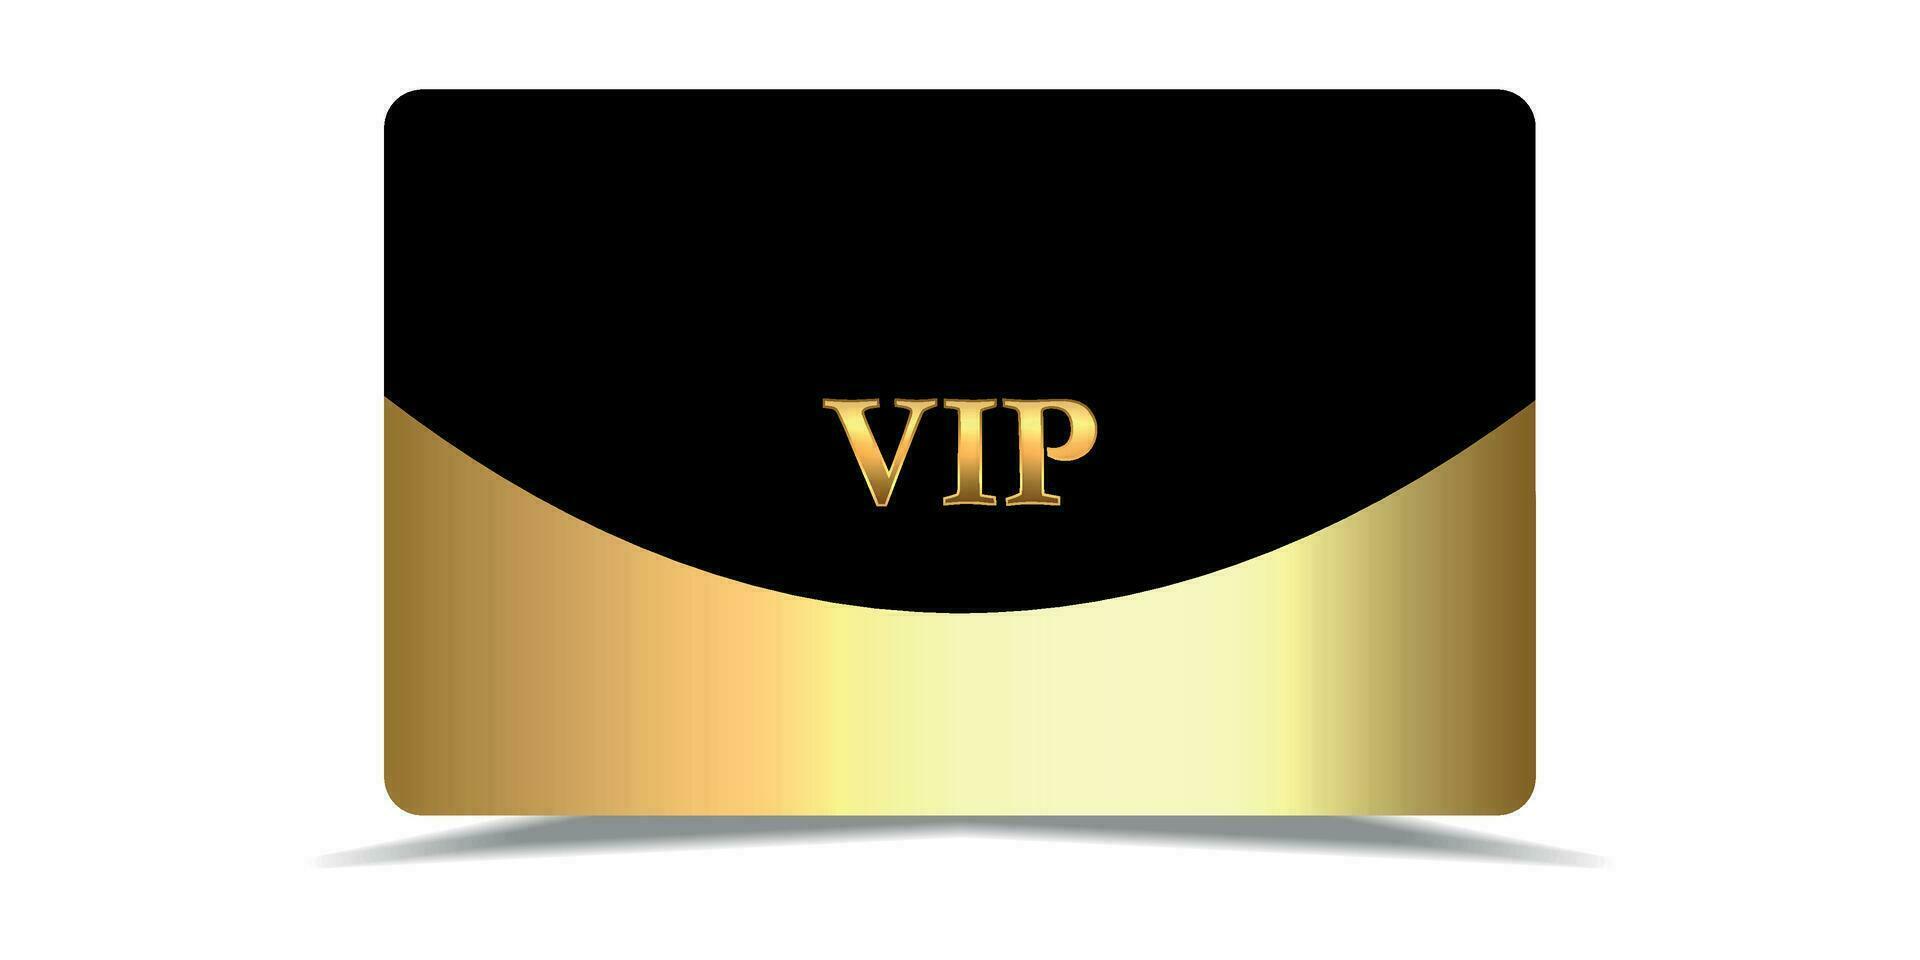 VIP. vip im abstrakt Stil auf schwarz Hintergrund. vip Karte. Luxus Vorlage Design. vip Einladung. vip Gold Fahrkarte. Prämie Karte vektor